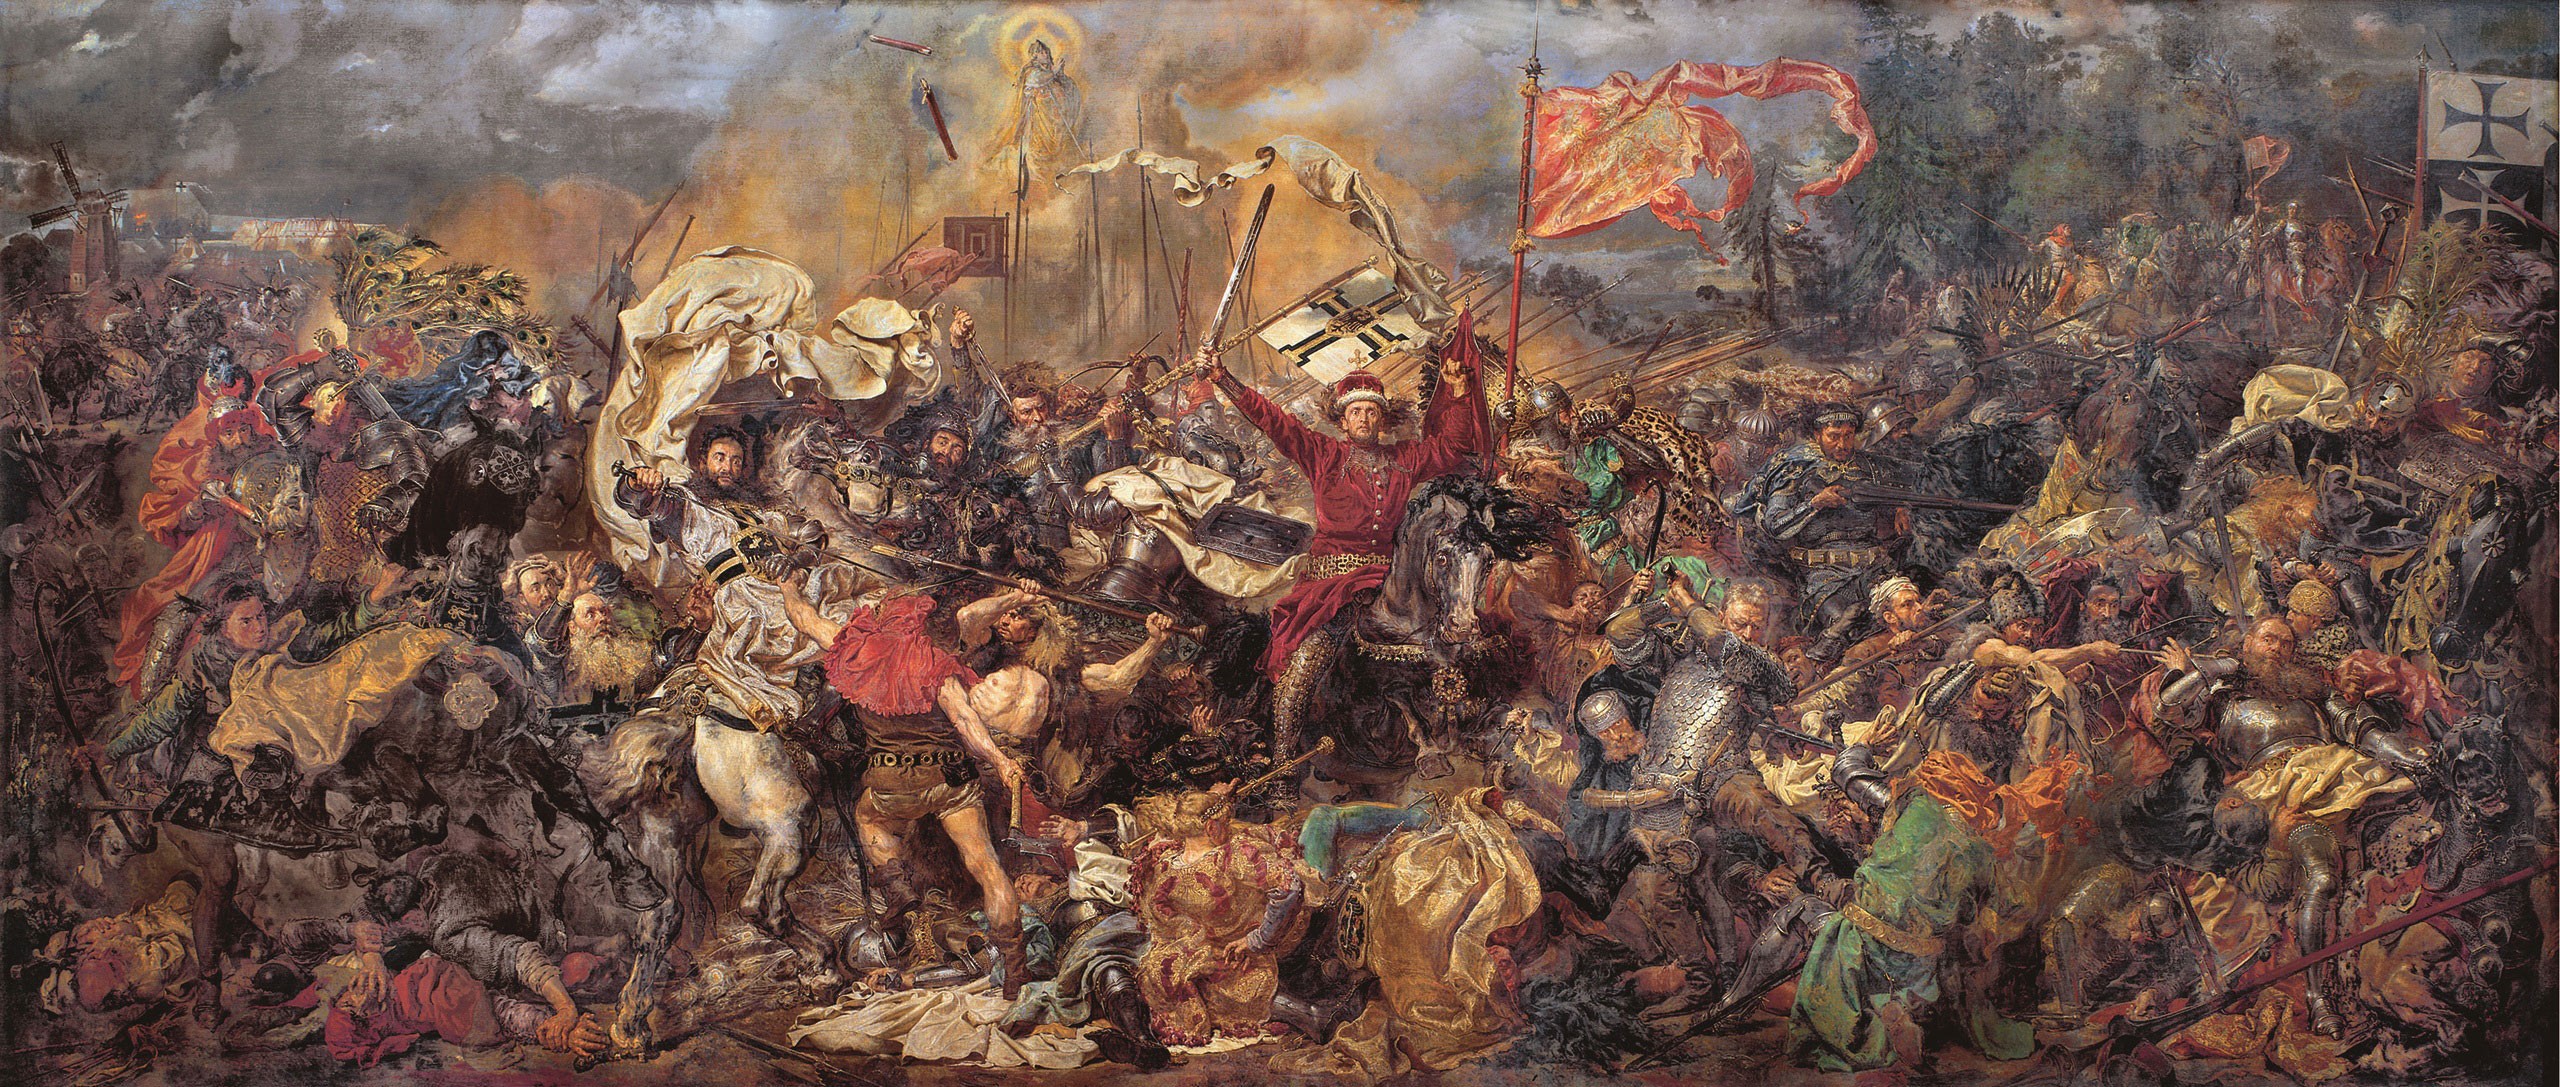 General 2560x1087 battlefields Battle of Grunwald classic art Jan Matejko Grunwald 1410 Poland Lithuania Teutonic Order